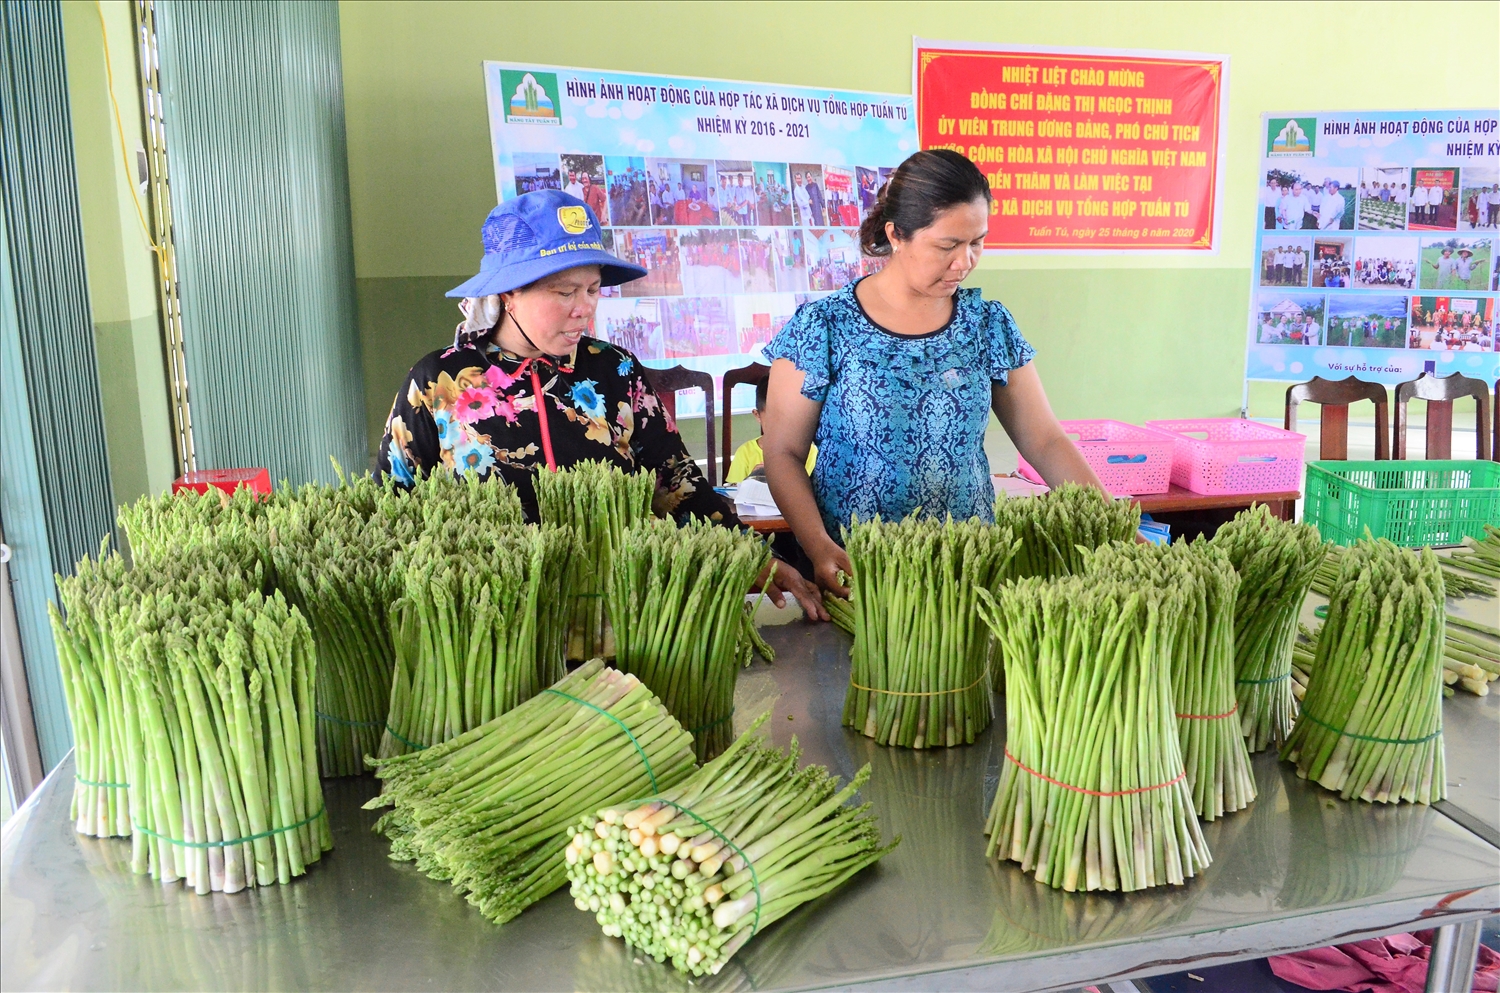 Đồng bào Chăm ở thôn Tuấn Tú, xã An Hải, huyện Ninh Phước, Ninh Thuận vươn lên làm giàu từ trồng cây măng tây xanh, đem lại hiệu quả kinh tế cao.